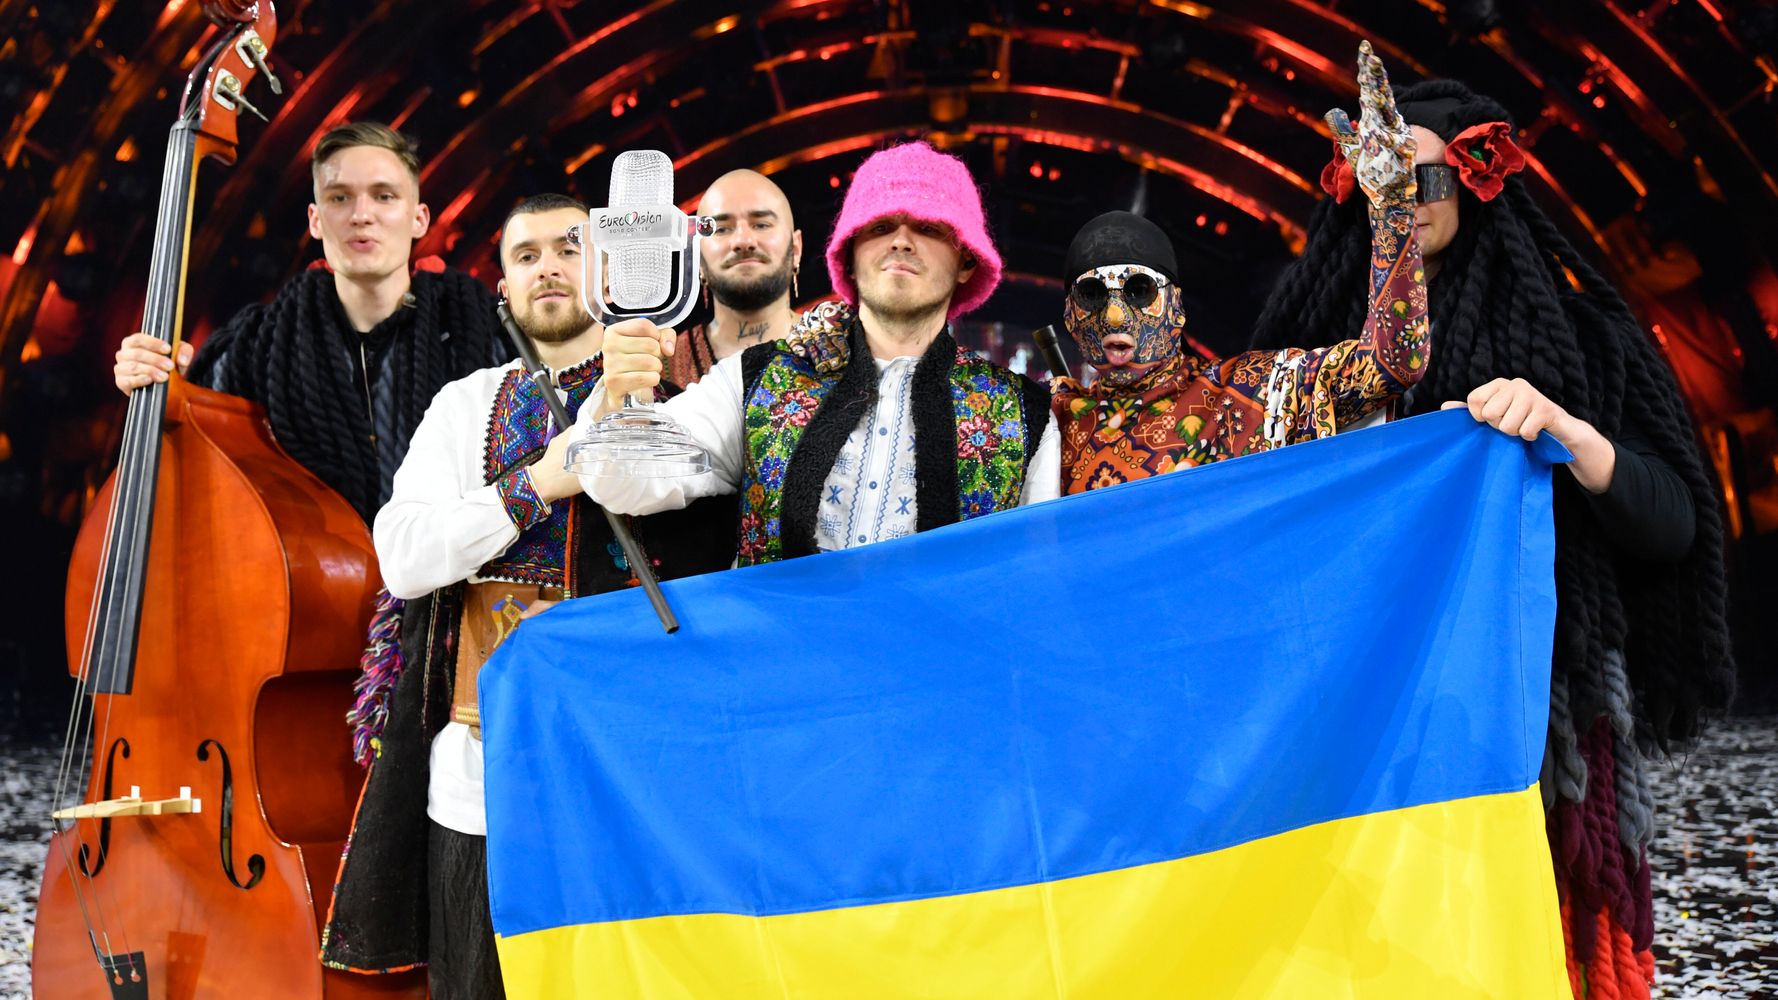 ユーロビジョンでウクライナ代表が優勝。「マリウポリを、アゾフスタリ製鉄所を助けて」と呼びかけ【動画】